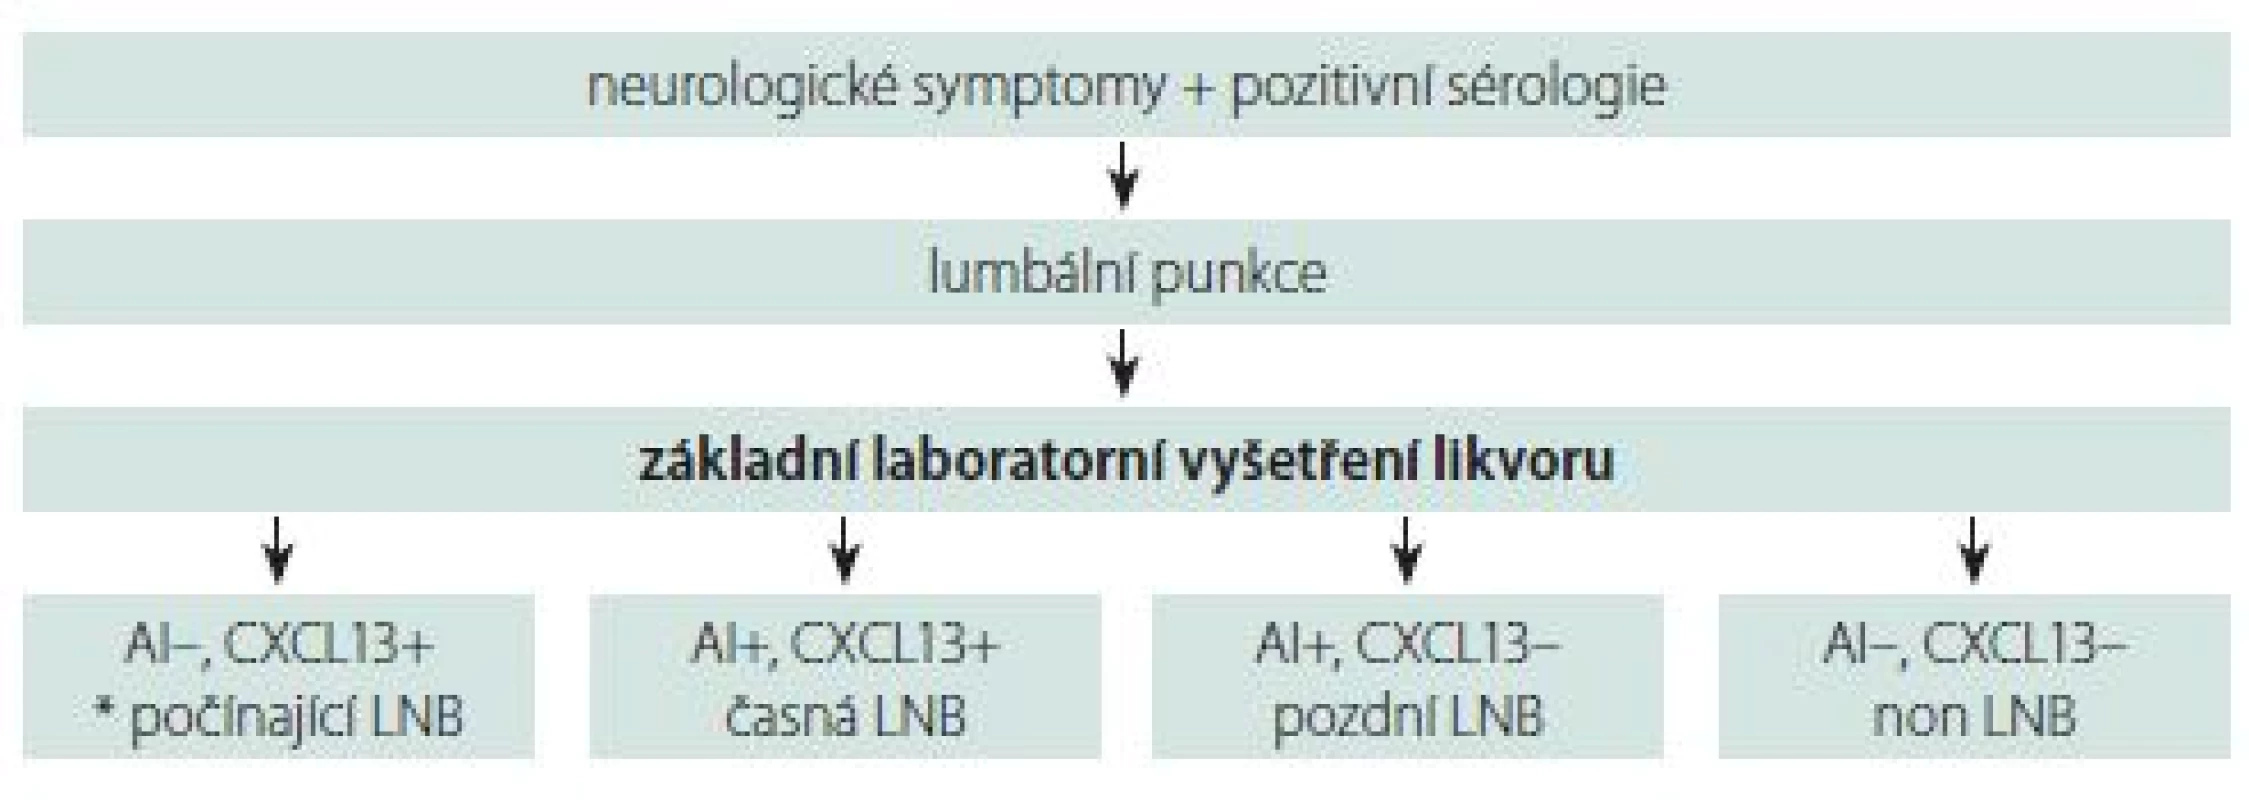 Navrhovaná laboratorní diagnostika LNB. AI – protilátkový index; LNB – lymeská neuroborelióza<br>
Fig. 2. The proposed laboratory diagnostics of LNB. AI – antibody index; LNB – Lyme neuroborreliosis
